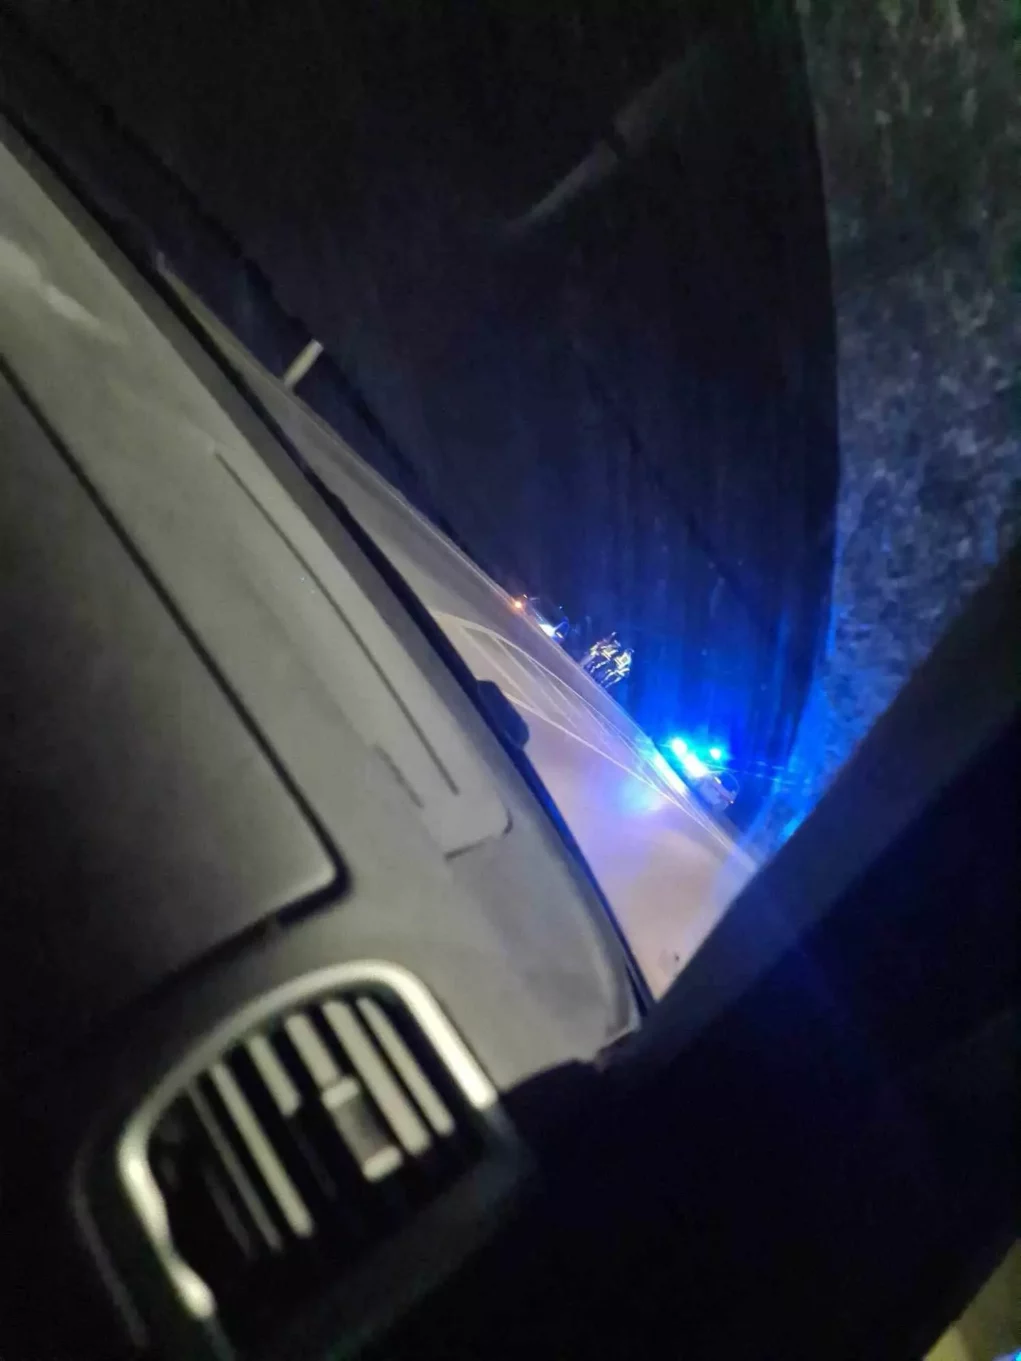 Bild auf 5min.at zeigt ein Polizeiauto im Busch